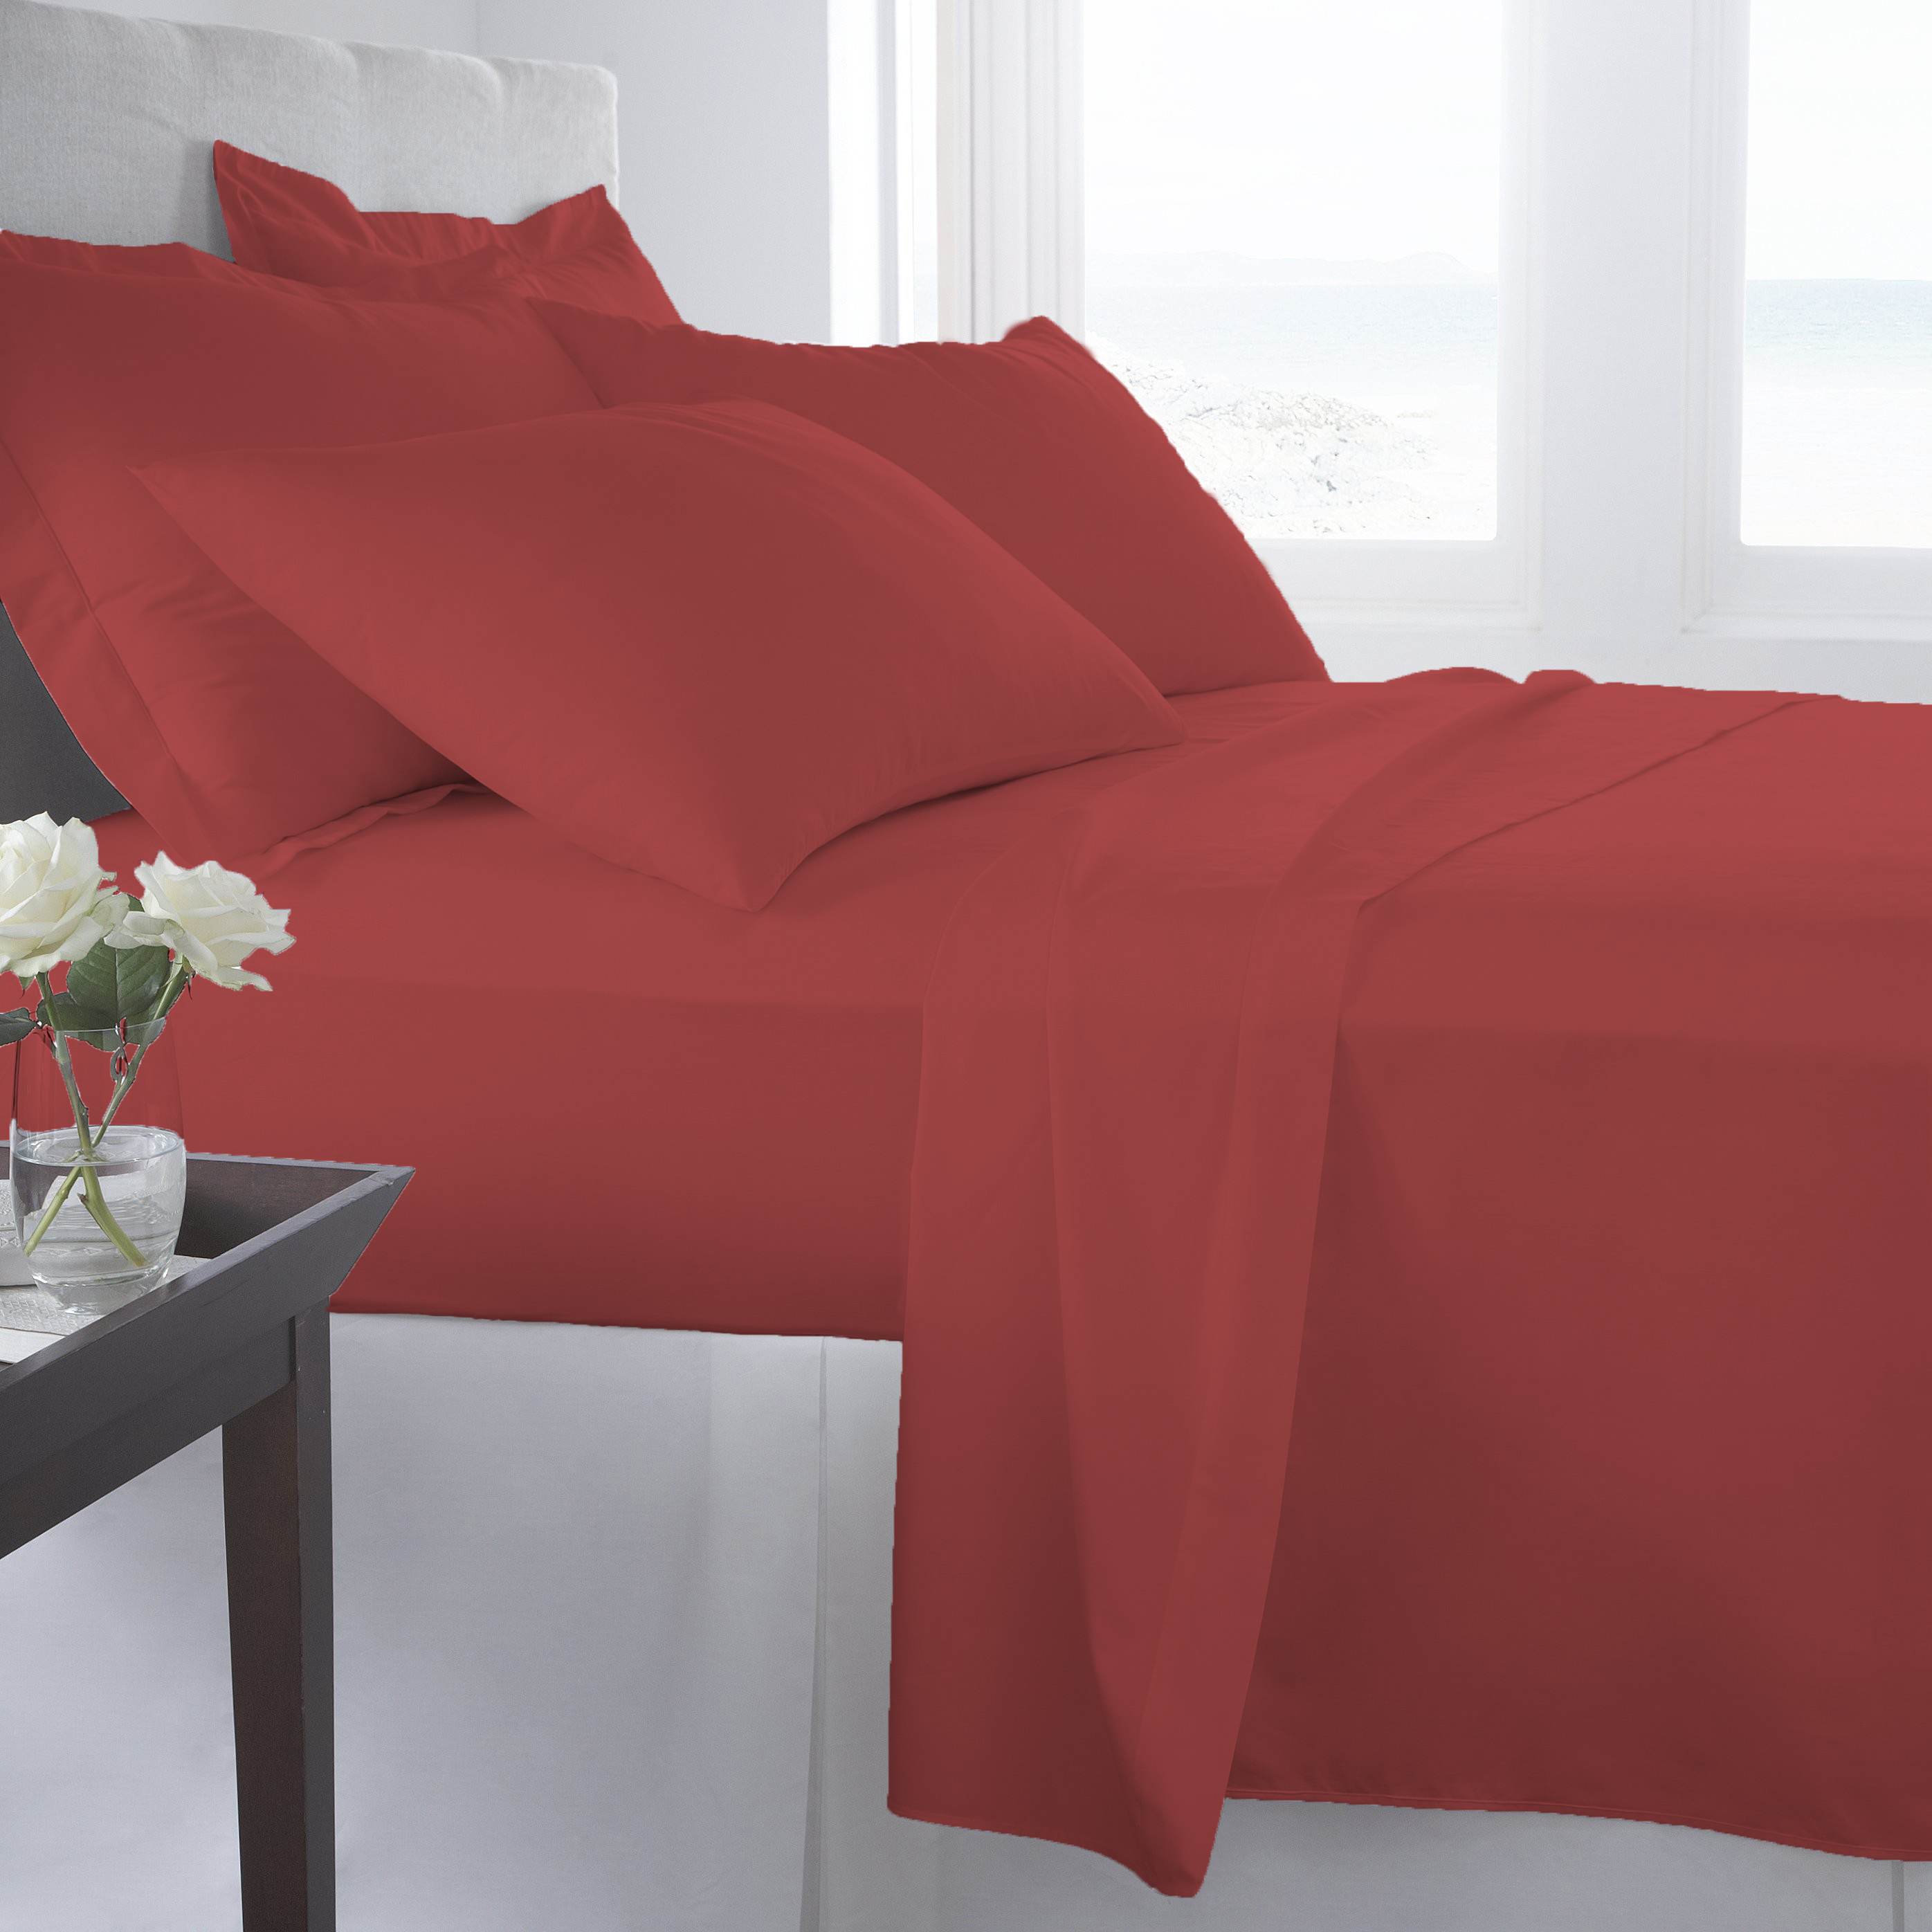 Supreme Super Soft 4 Piece Bed Sheet Set Deep Pocket Bedding - Full Size Maroon - image 1 of 2